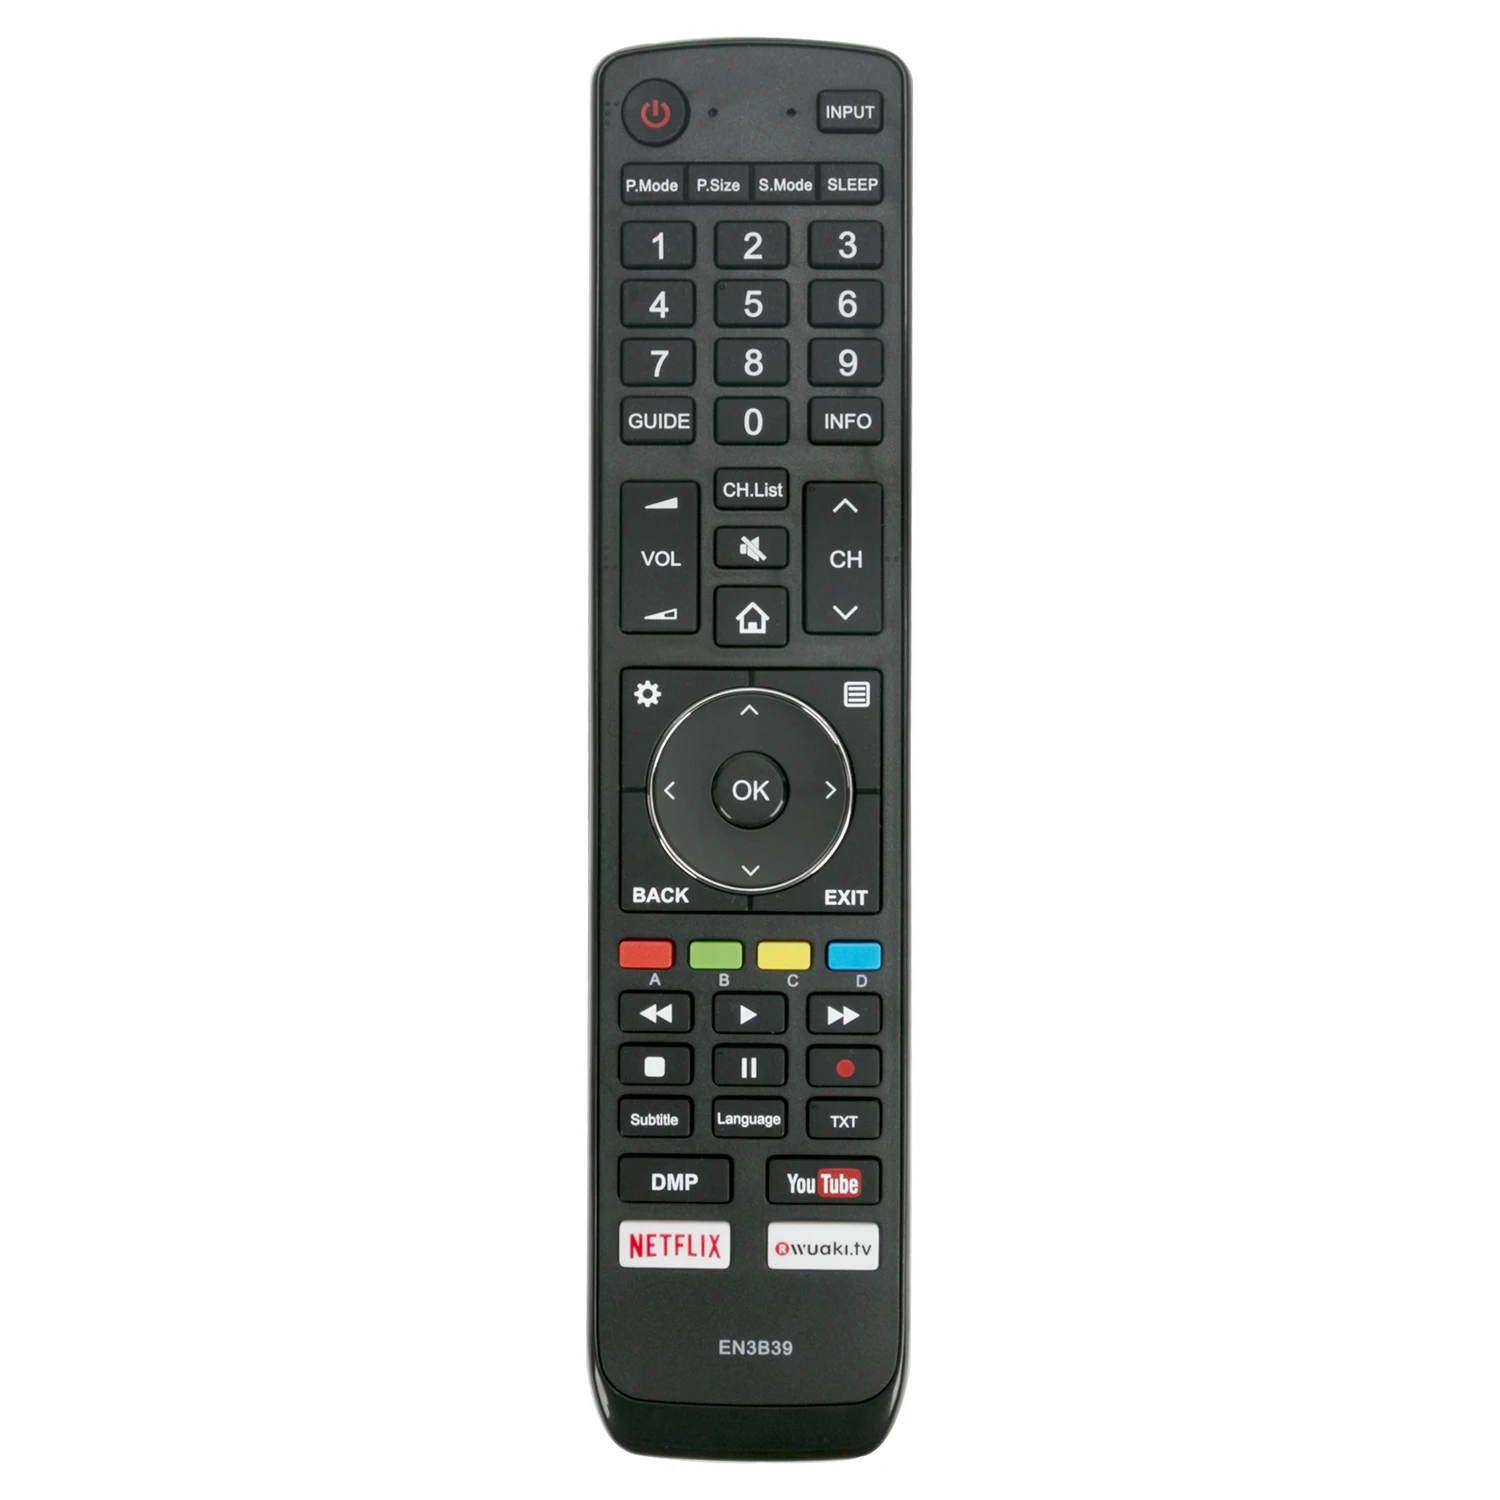 

NEW EN3B39 Suitable For HISENSE TV Remote control H45N5750 H75N6800 H50N6800 H65N6800 H65NU8700 with Netflix YouTube controller